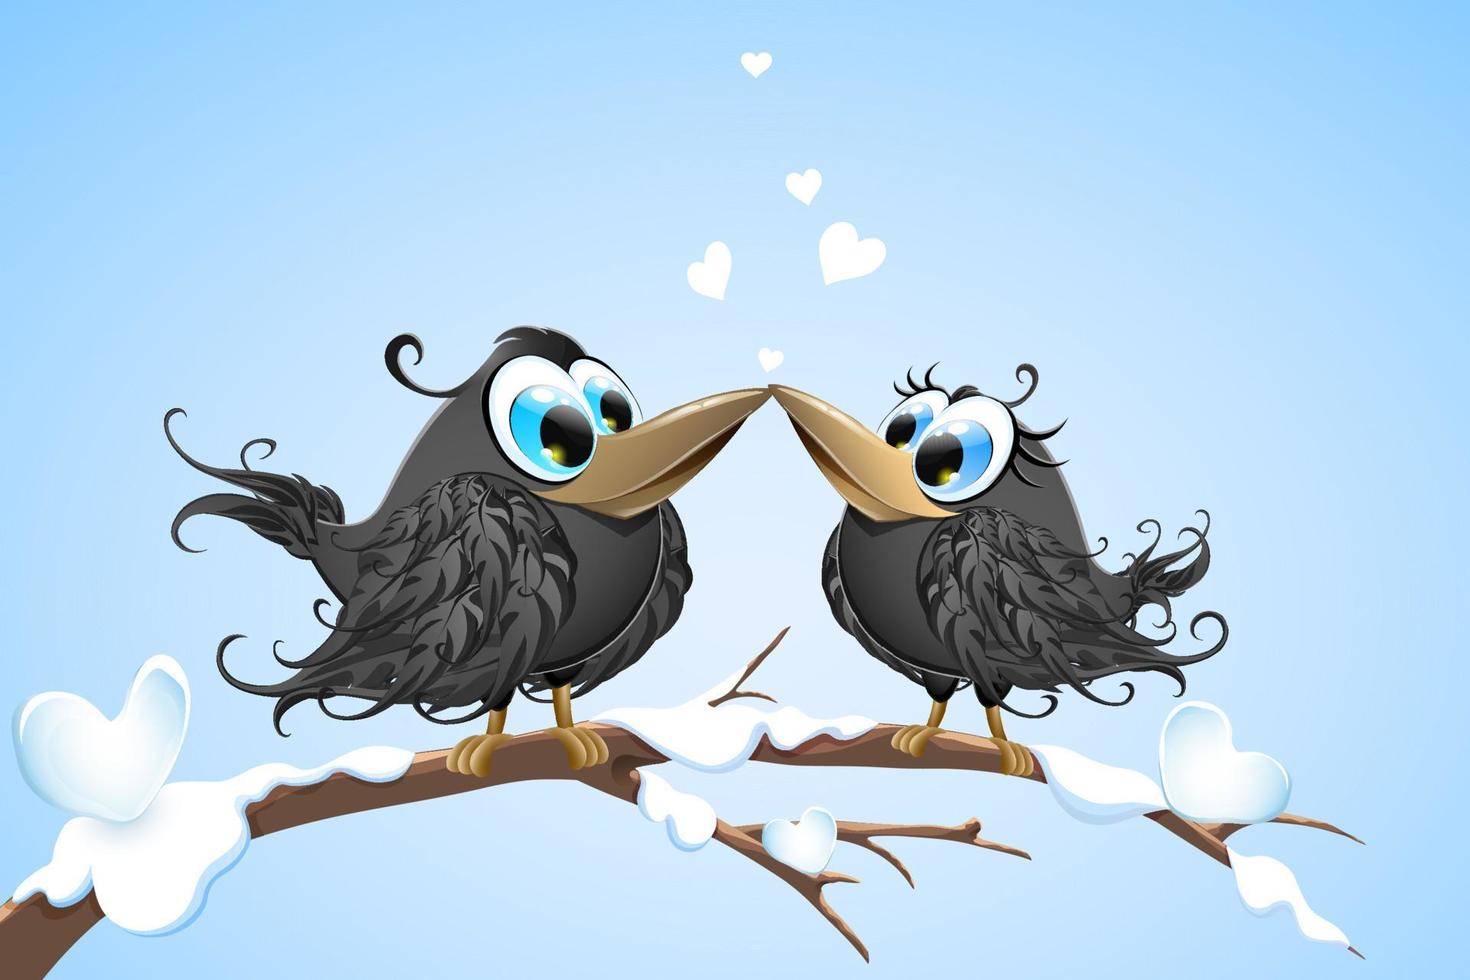 caricatura, lindo, pareja, de, negro, cuervos, enamorado, en, rama de árbol, con, nieve, corazones vector